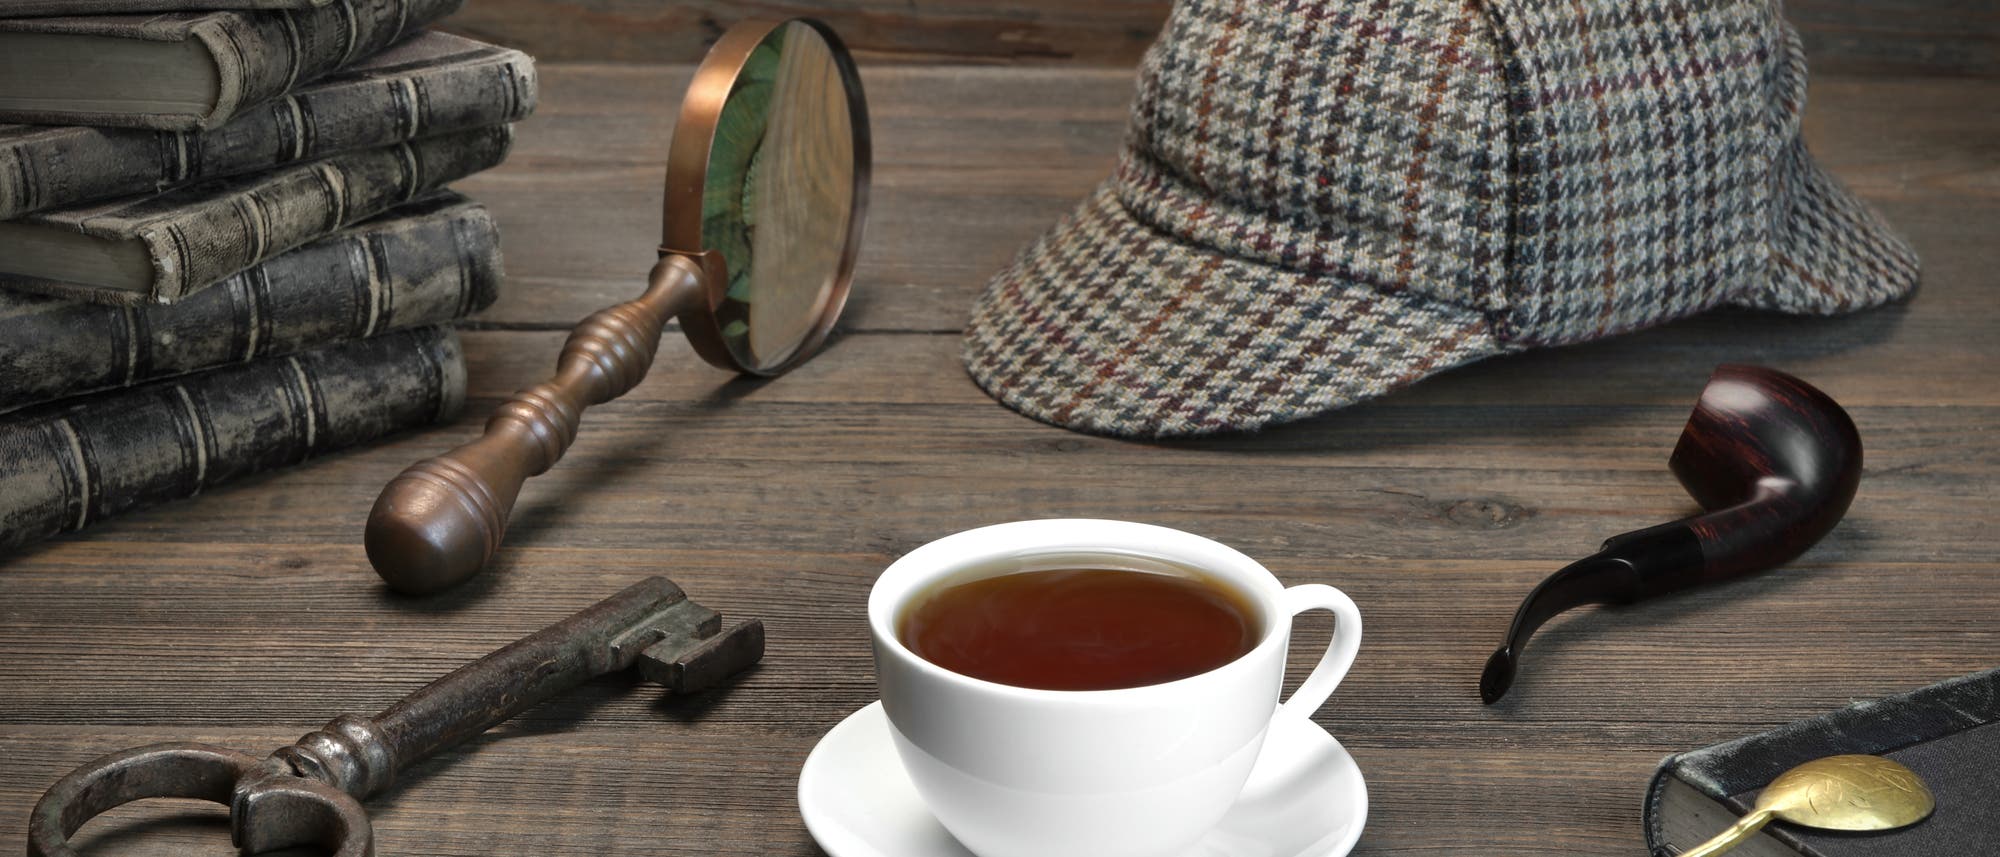 Die für den literarischen Meisterdetektiv Sherlock Holmes typischen Utensilien Pfeife, Lupe und karierte Mütze. Aus mysteriösen Gründen nicht im Bild: das Opium.